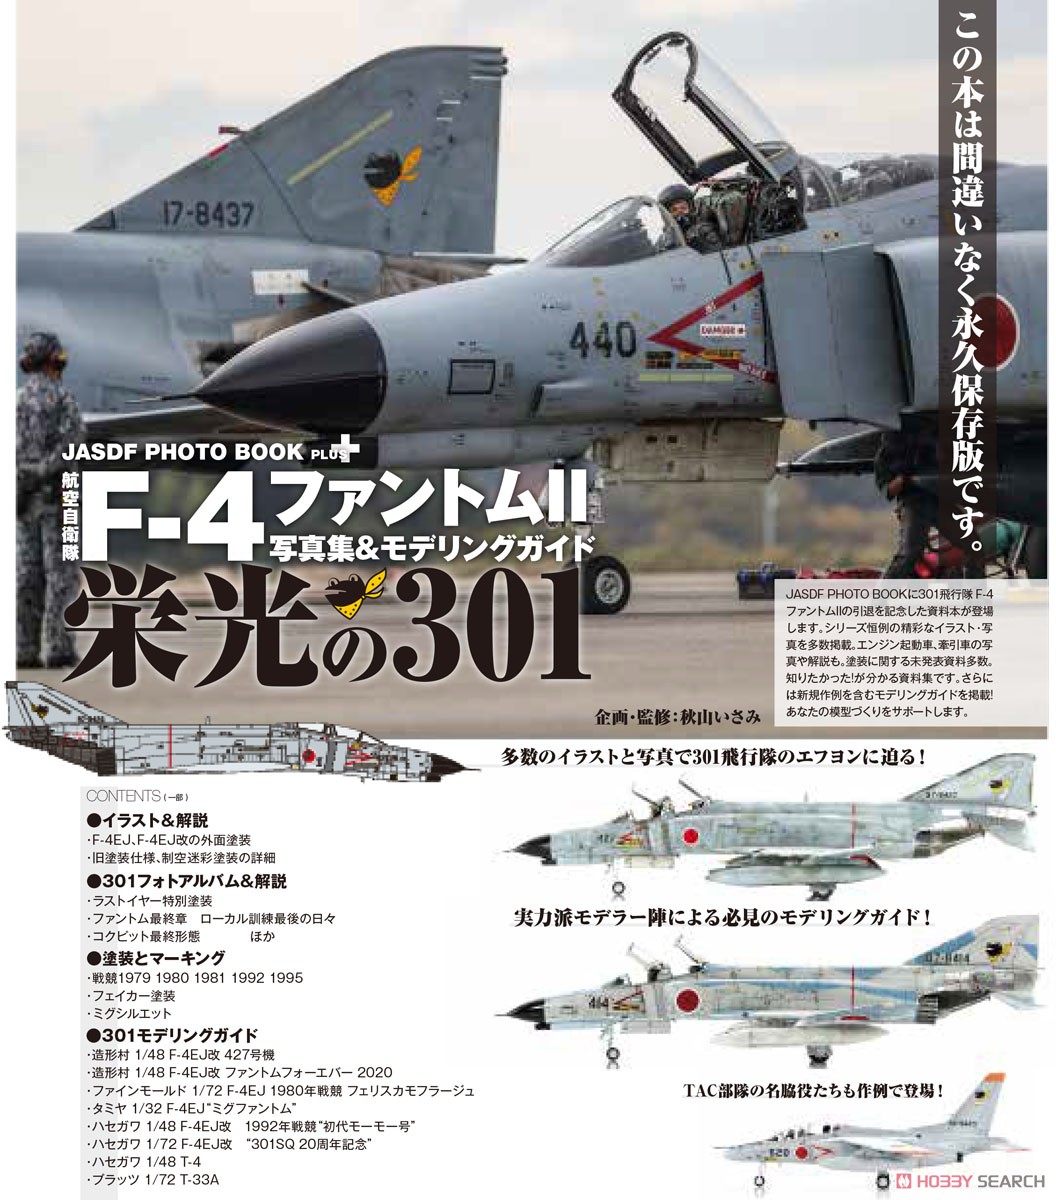 艦船模型スペシャル 別冊 JASDF PHOTO BOOK PLUS 航空自衛隊 F-4ファントムII 写真集&モデリングガイド 「栄光の301」 (書籍) その他の画像1